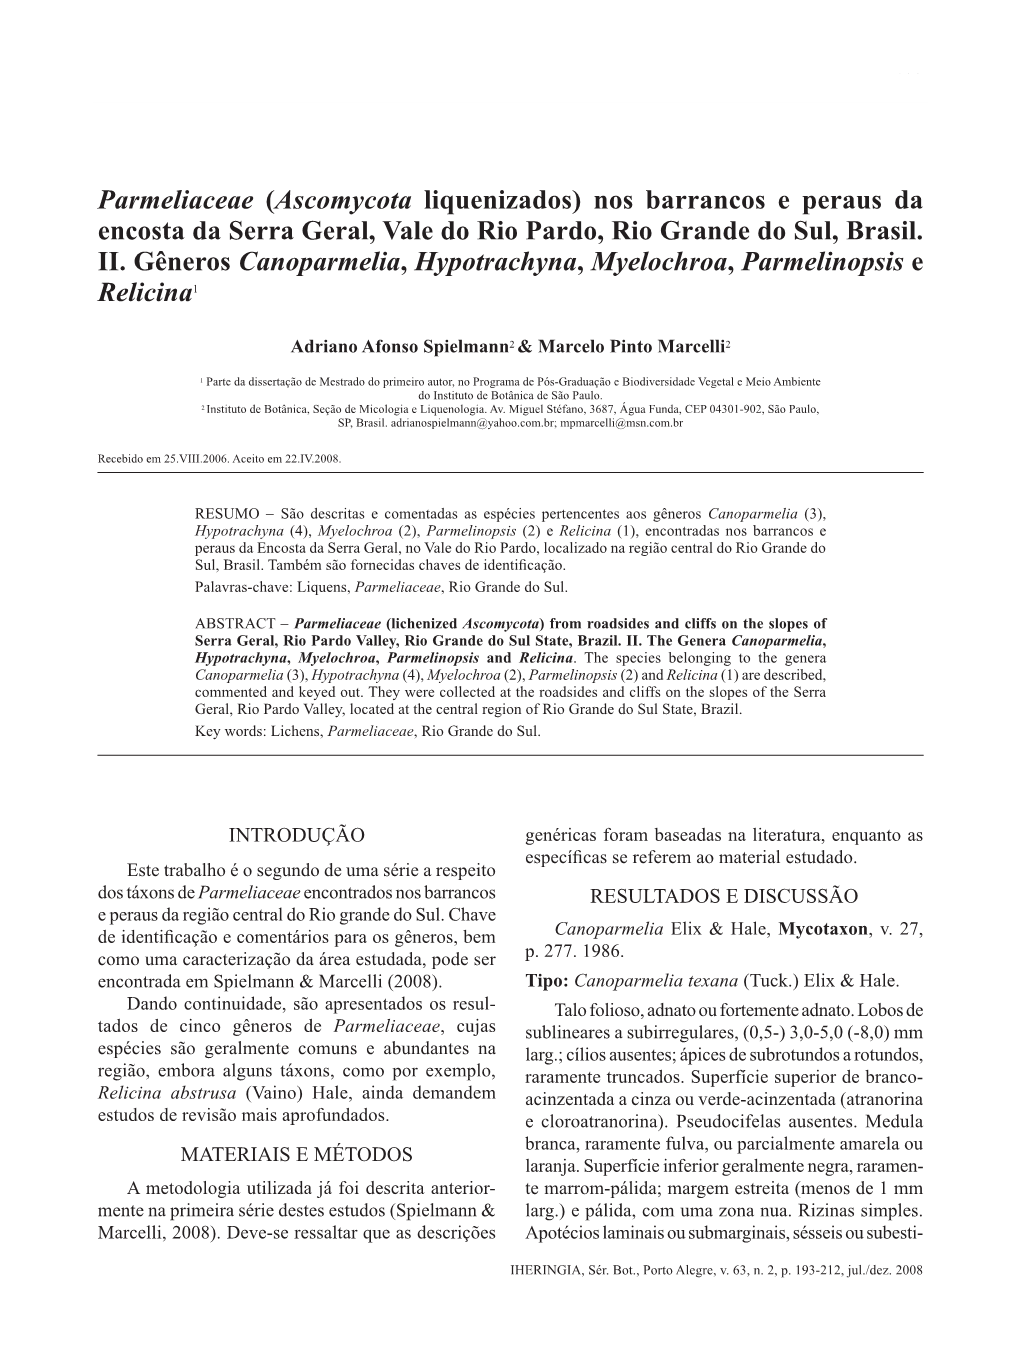 Parmeliaceae (Ascomycota Liquenizados) Nos Barrancos